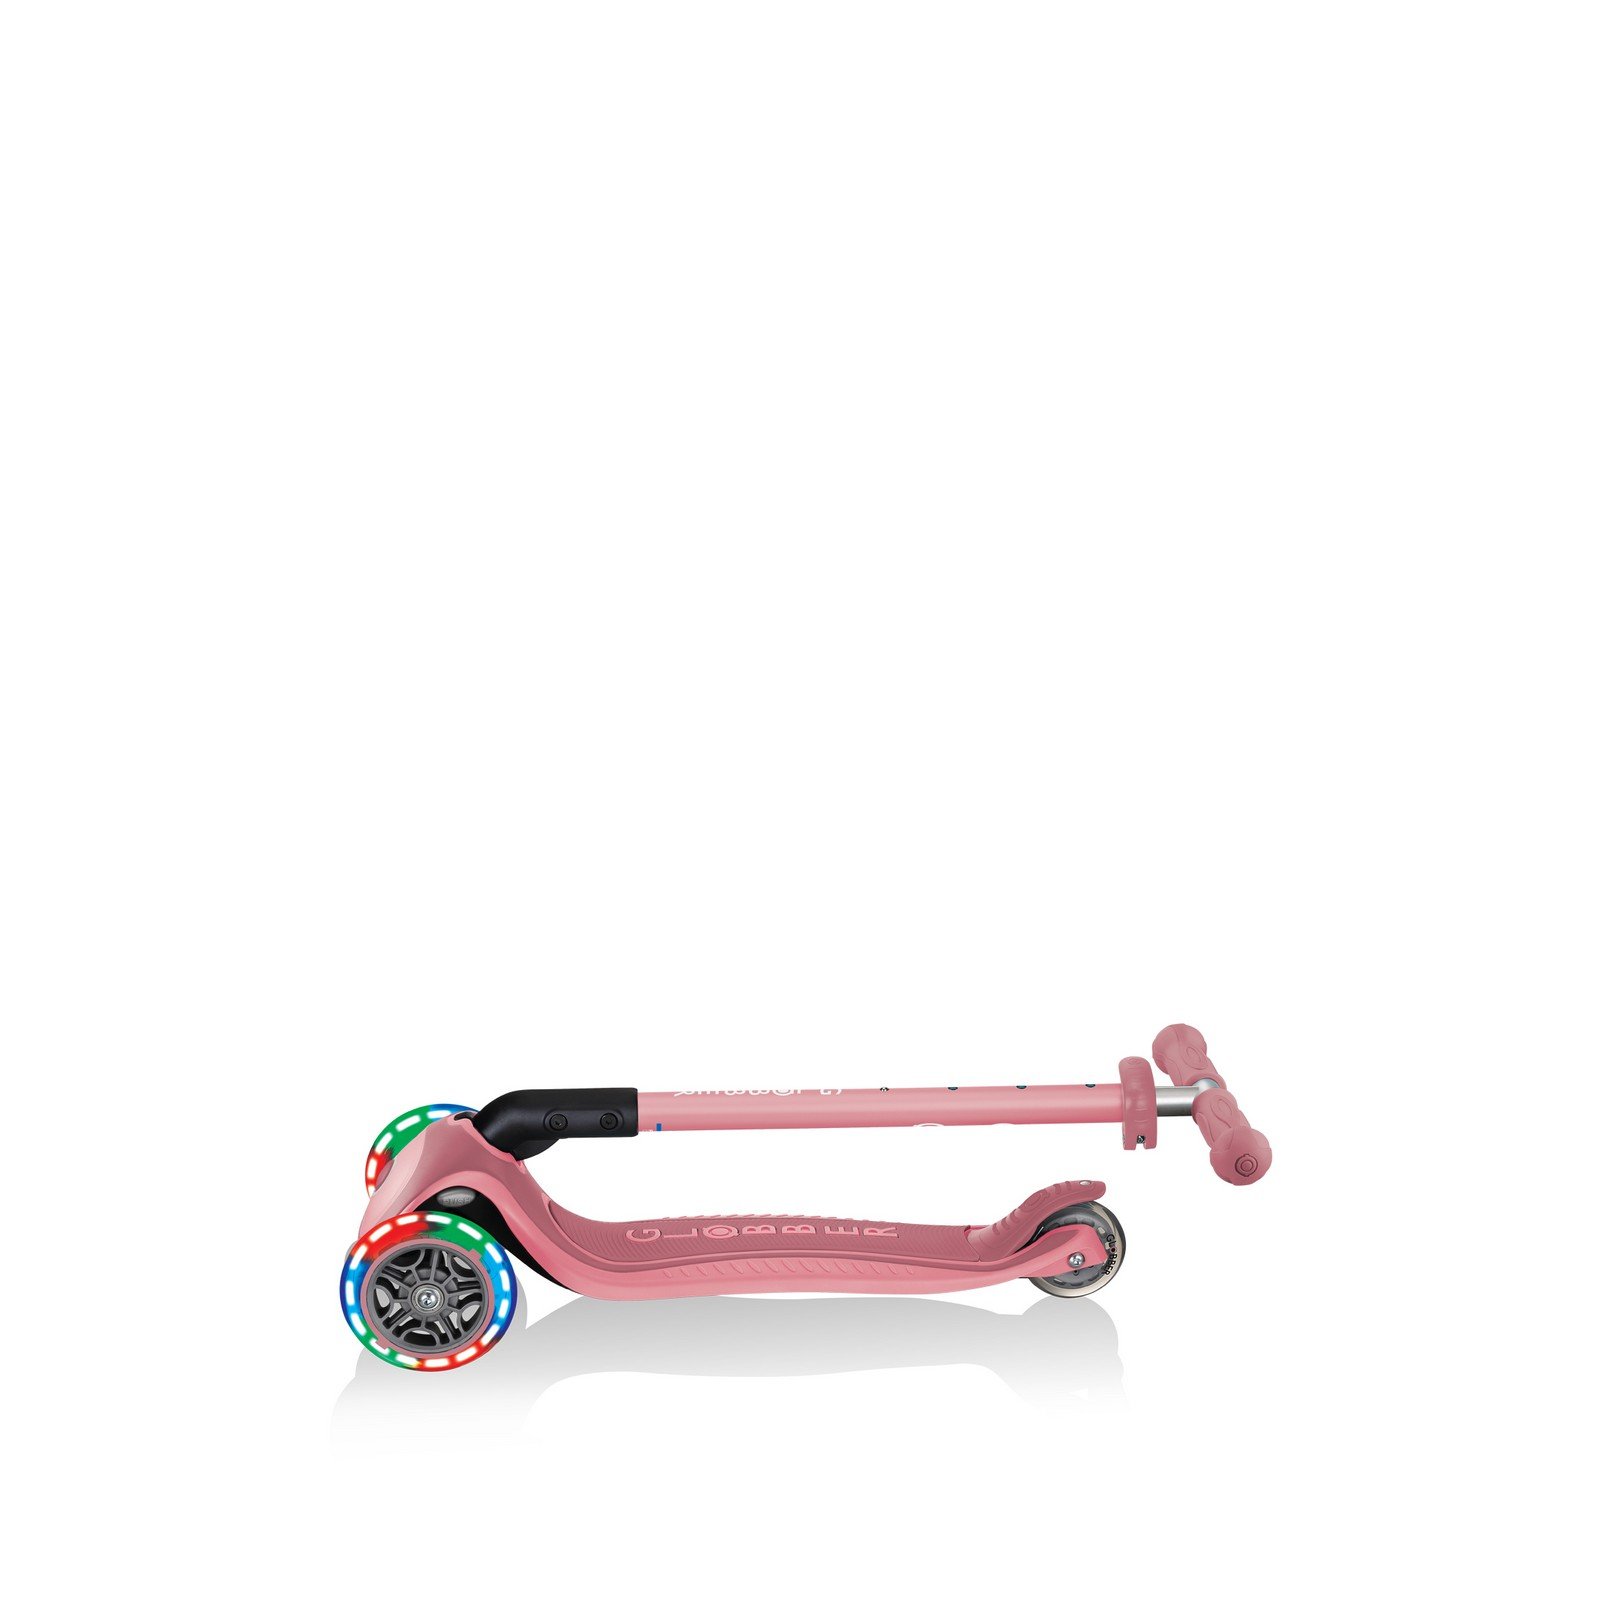 Самокат Globber Primo foldable plus lights, колеса с подсветкой, пастельно-розовый (439-210) - фото 10